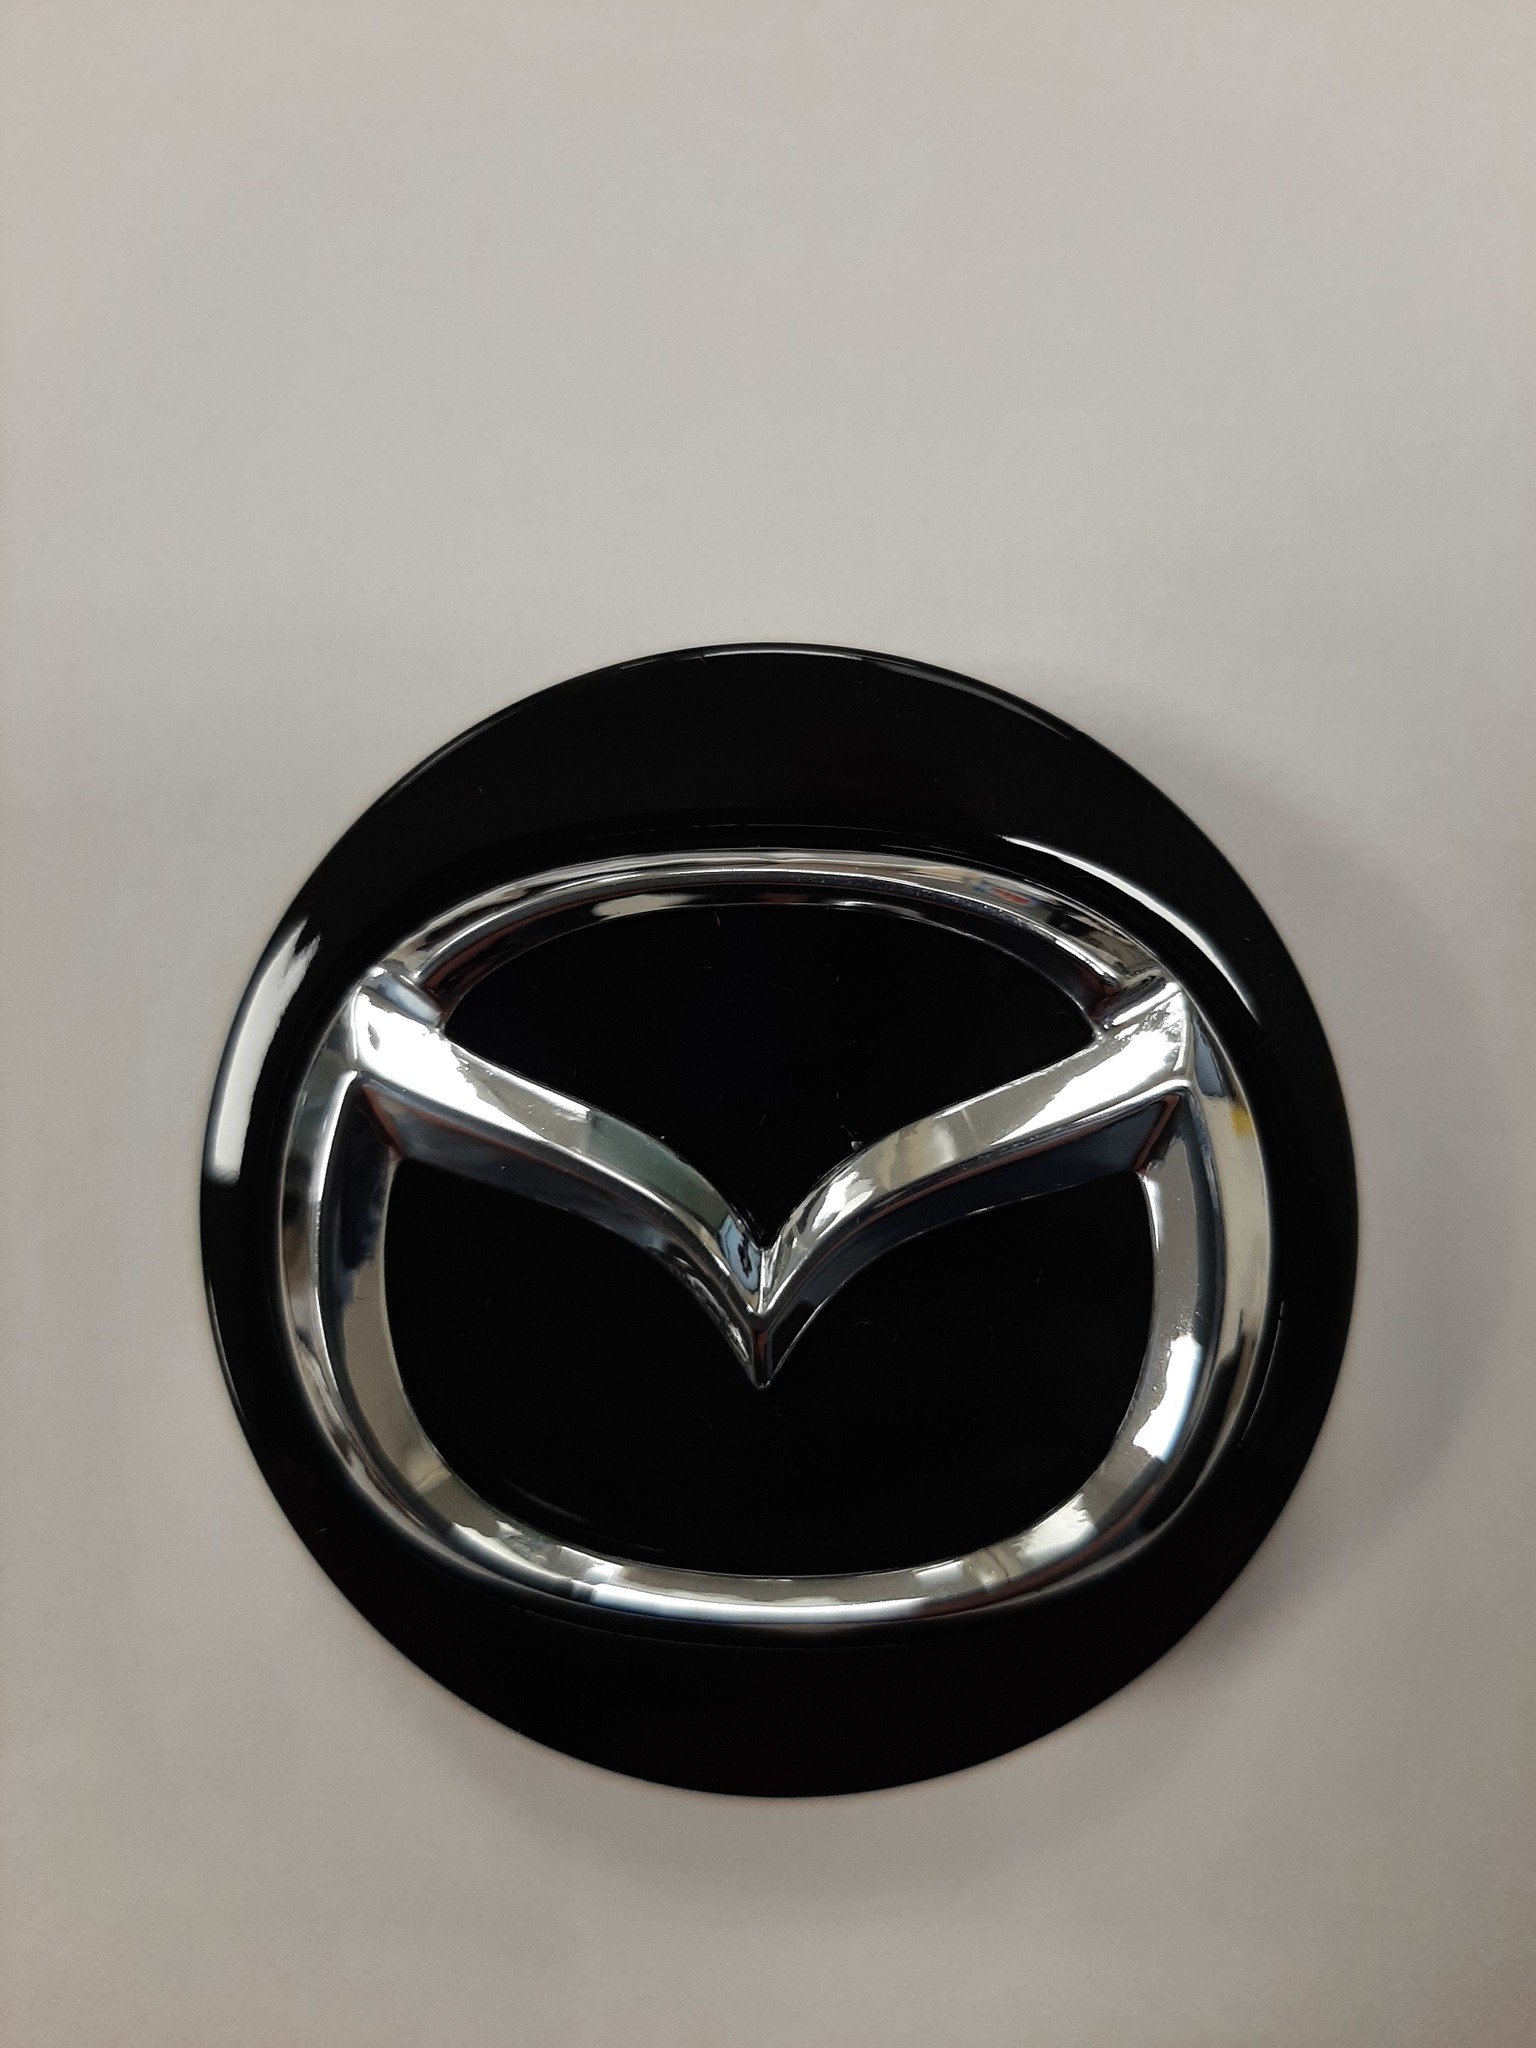 Mazda Nabendeckel Schwarz - Autohaus Prange Online Shop